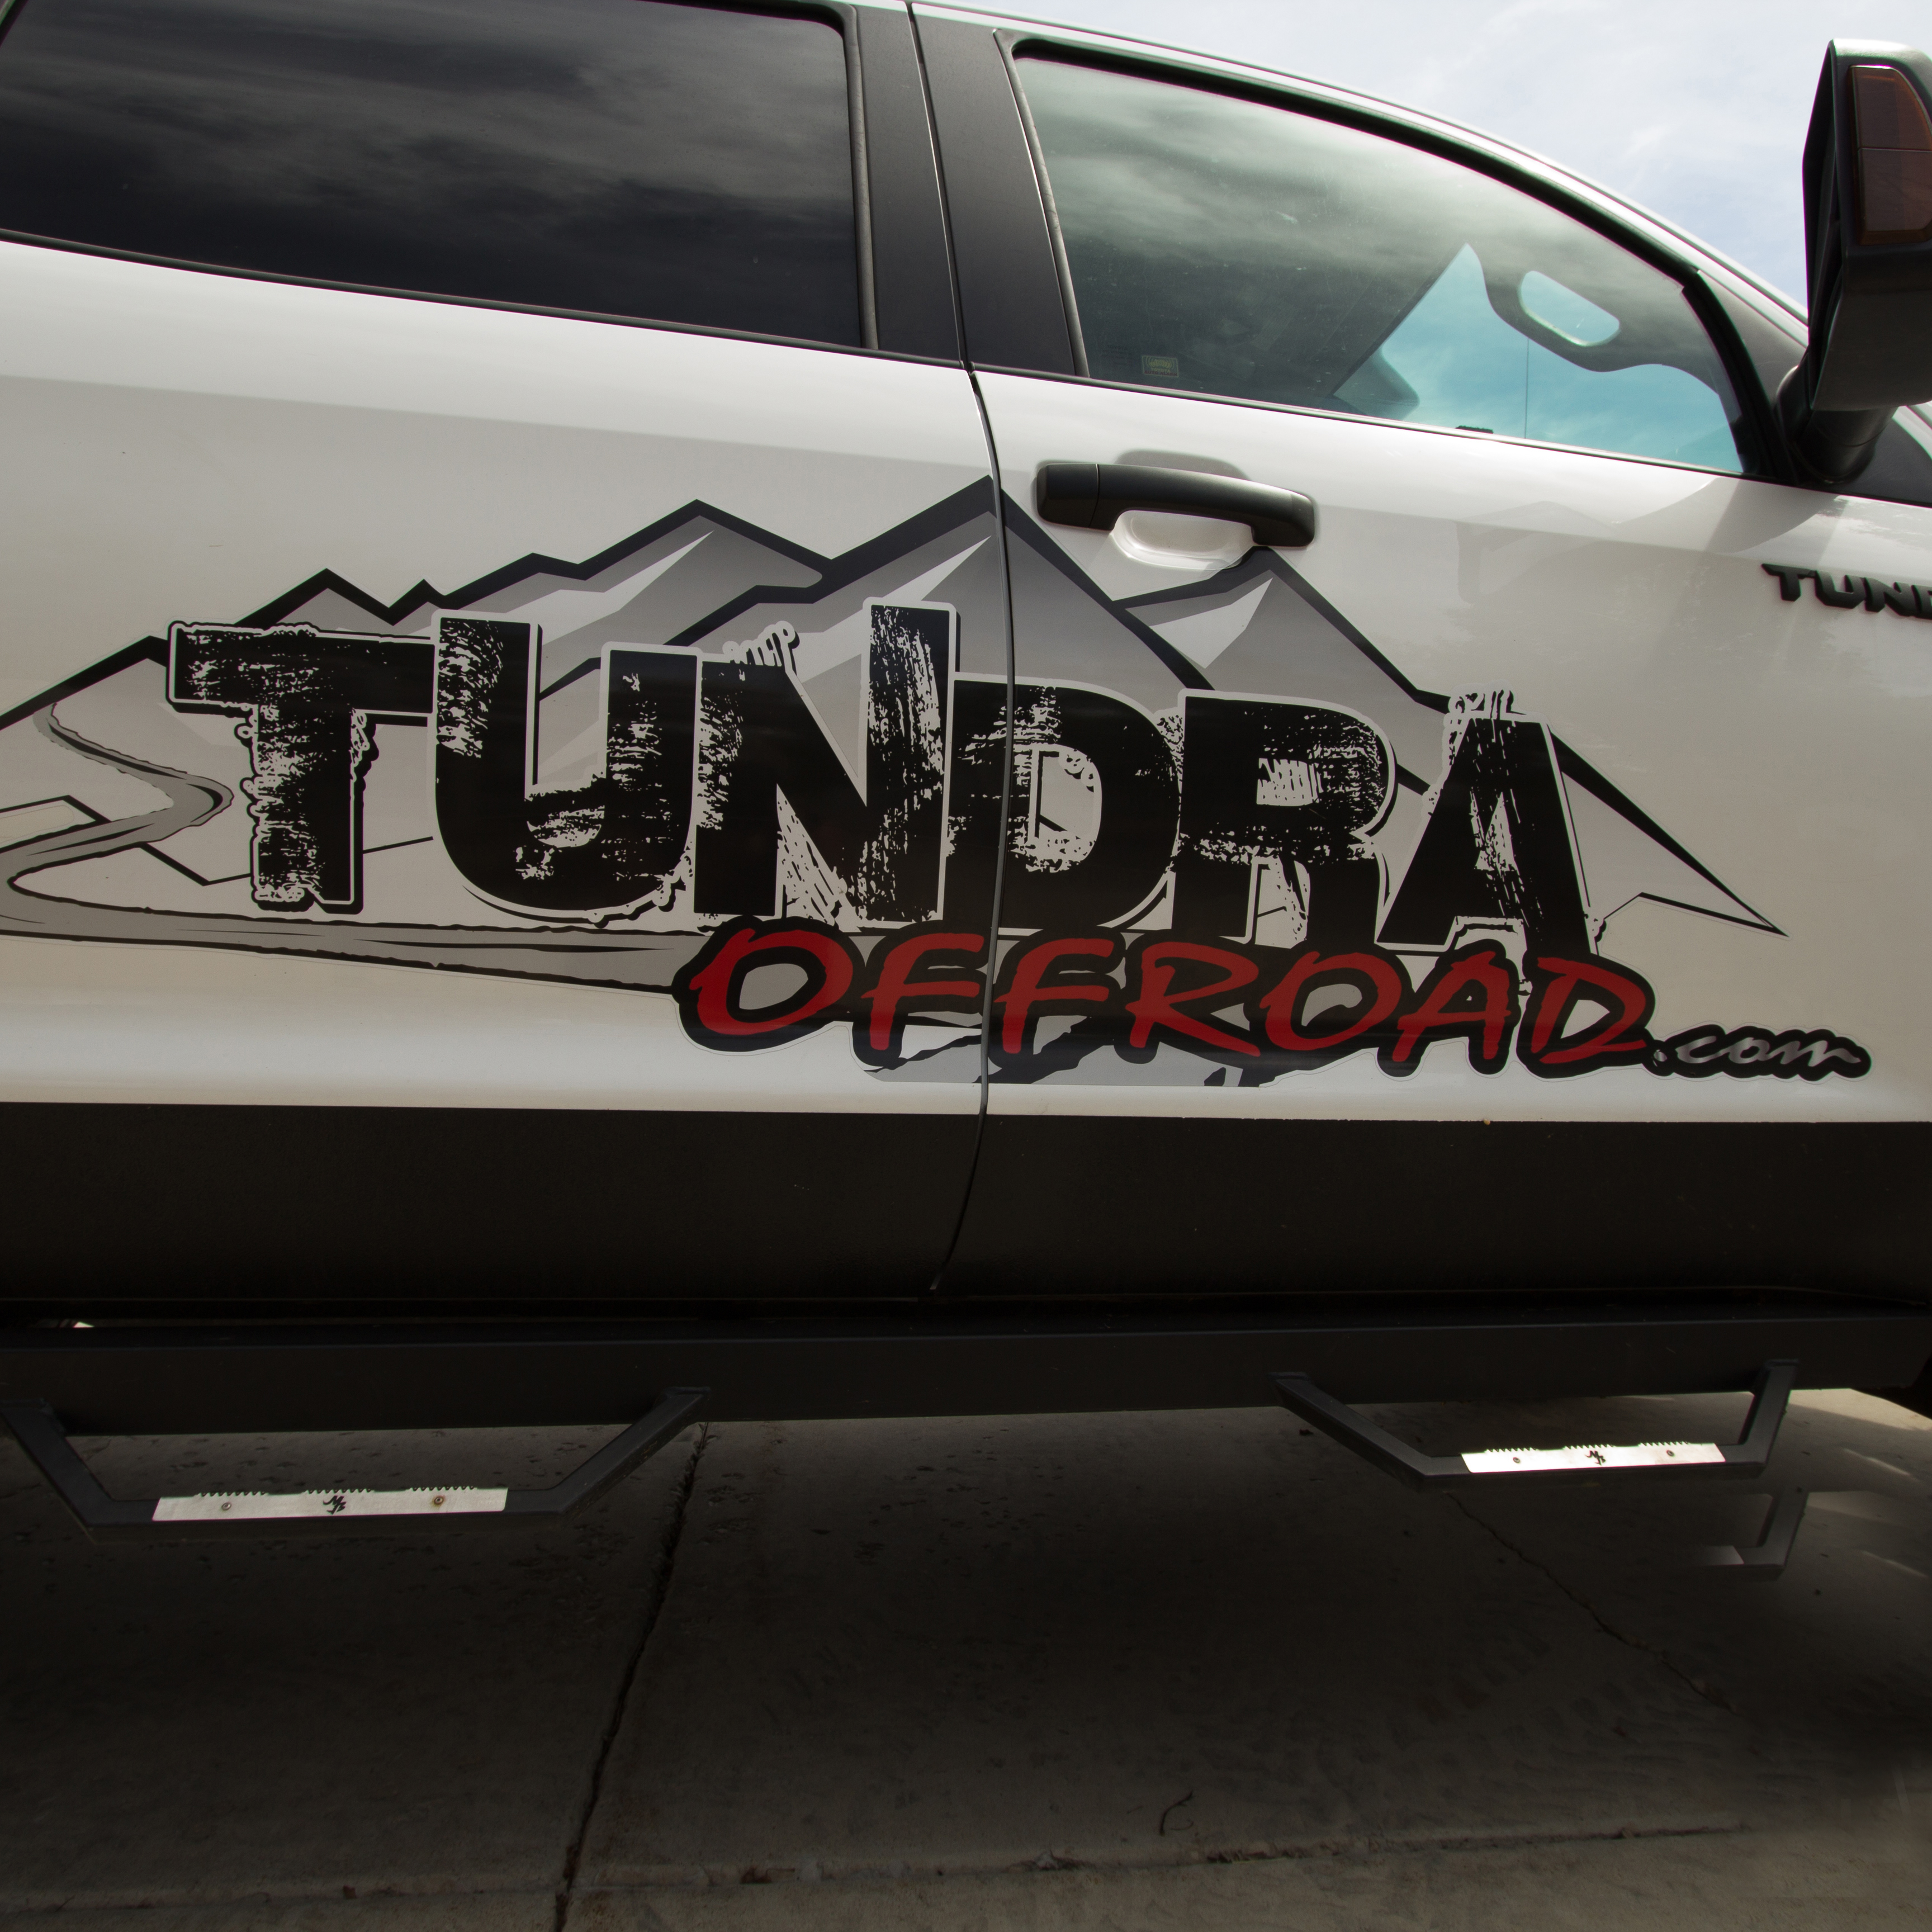 Custom running boards for Tundra offroad.com